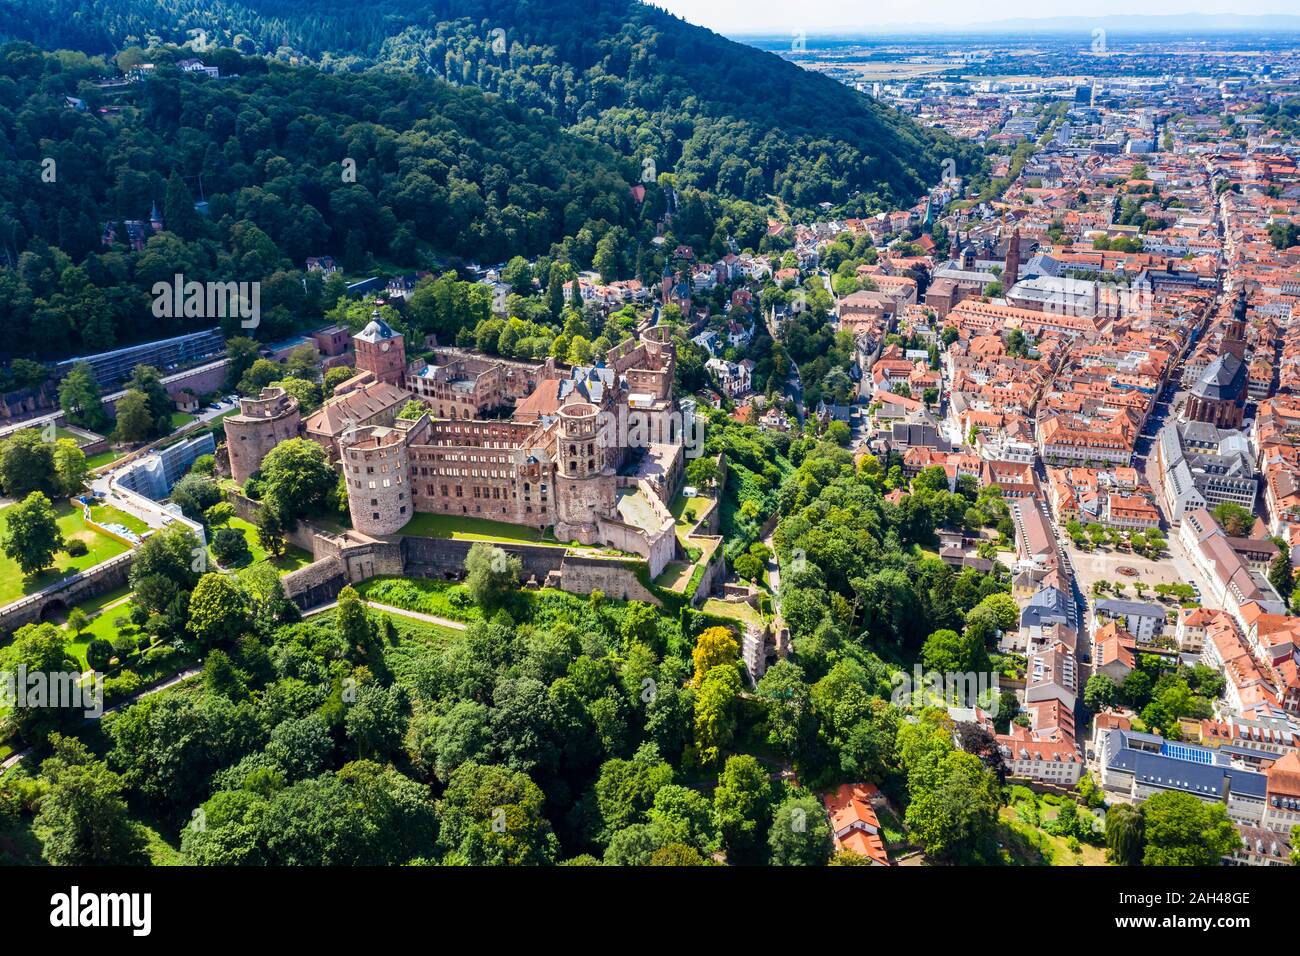 Alemania, Baden-Wurttemberg, vista aérea con el castillo de Heidelberg Foto de stock